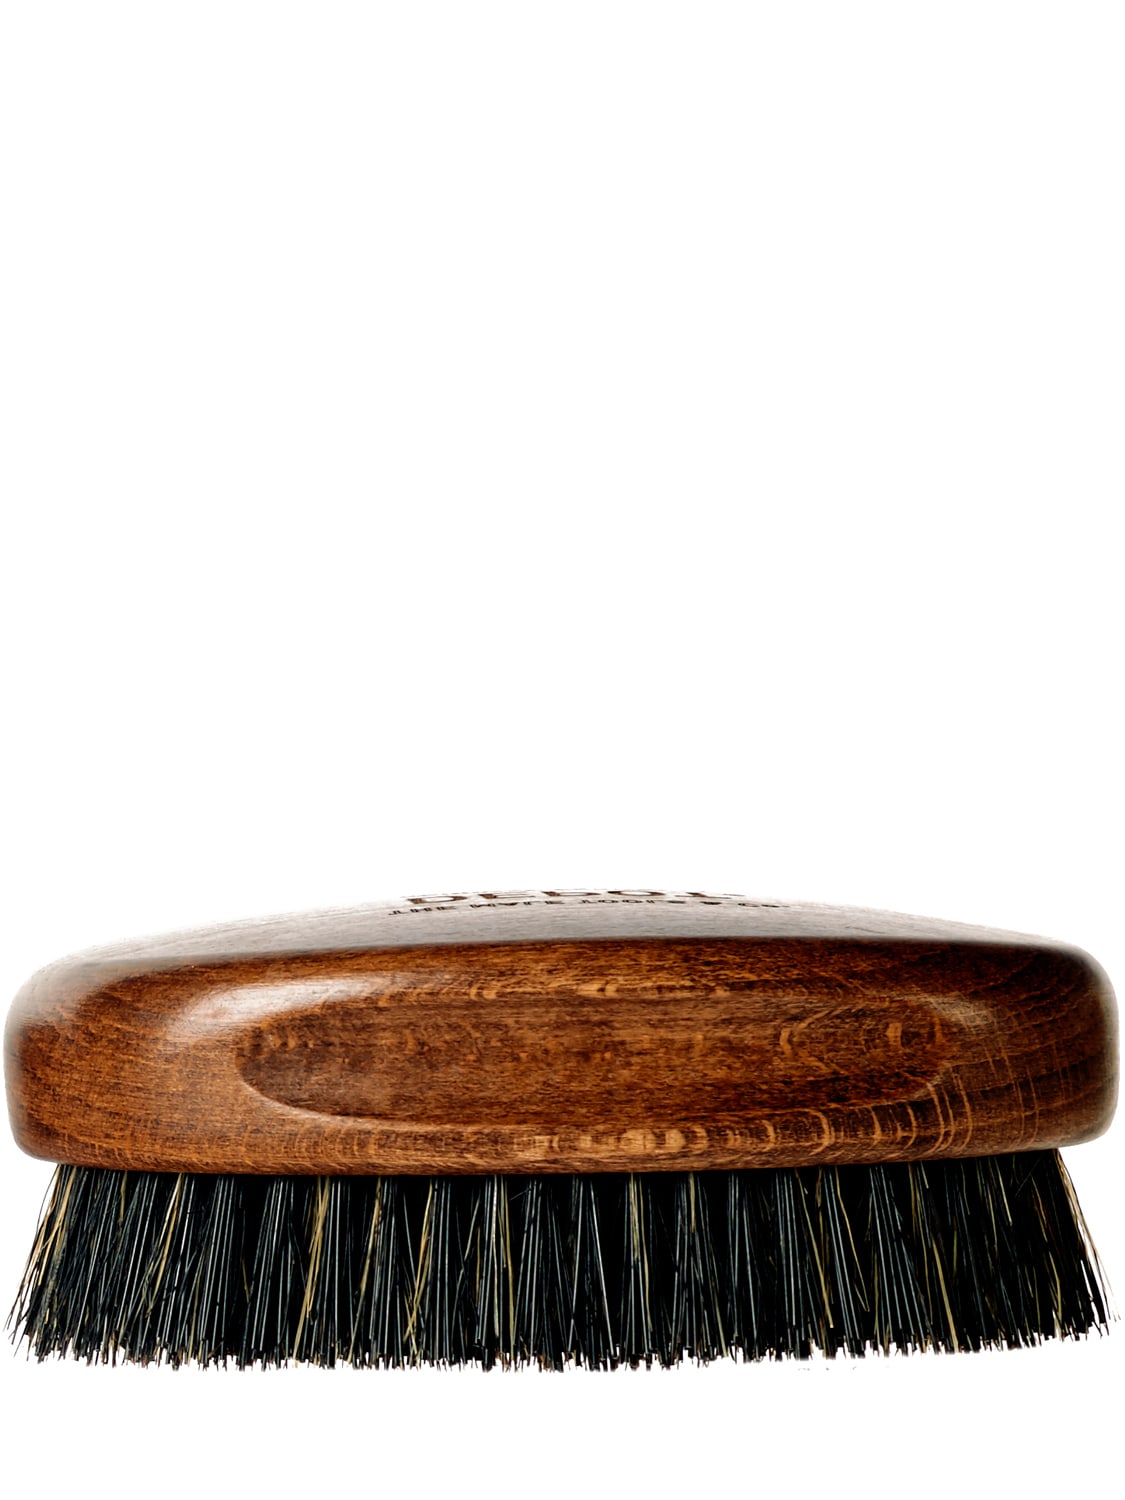 Image of Large Wooden Beard Brush